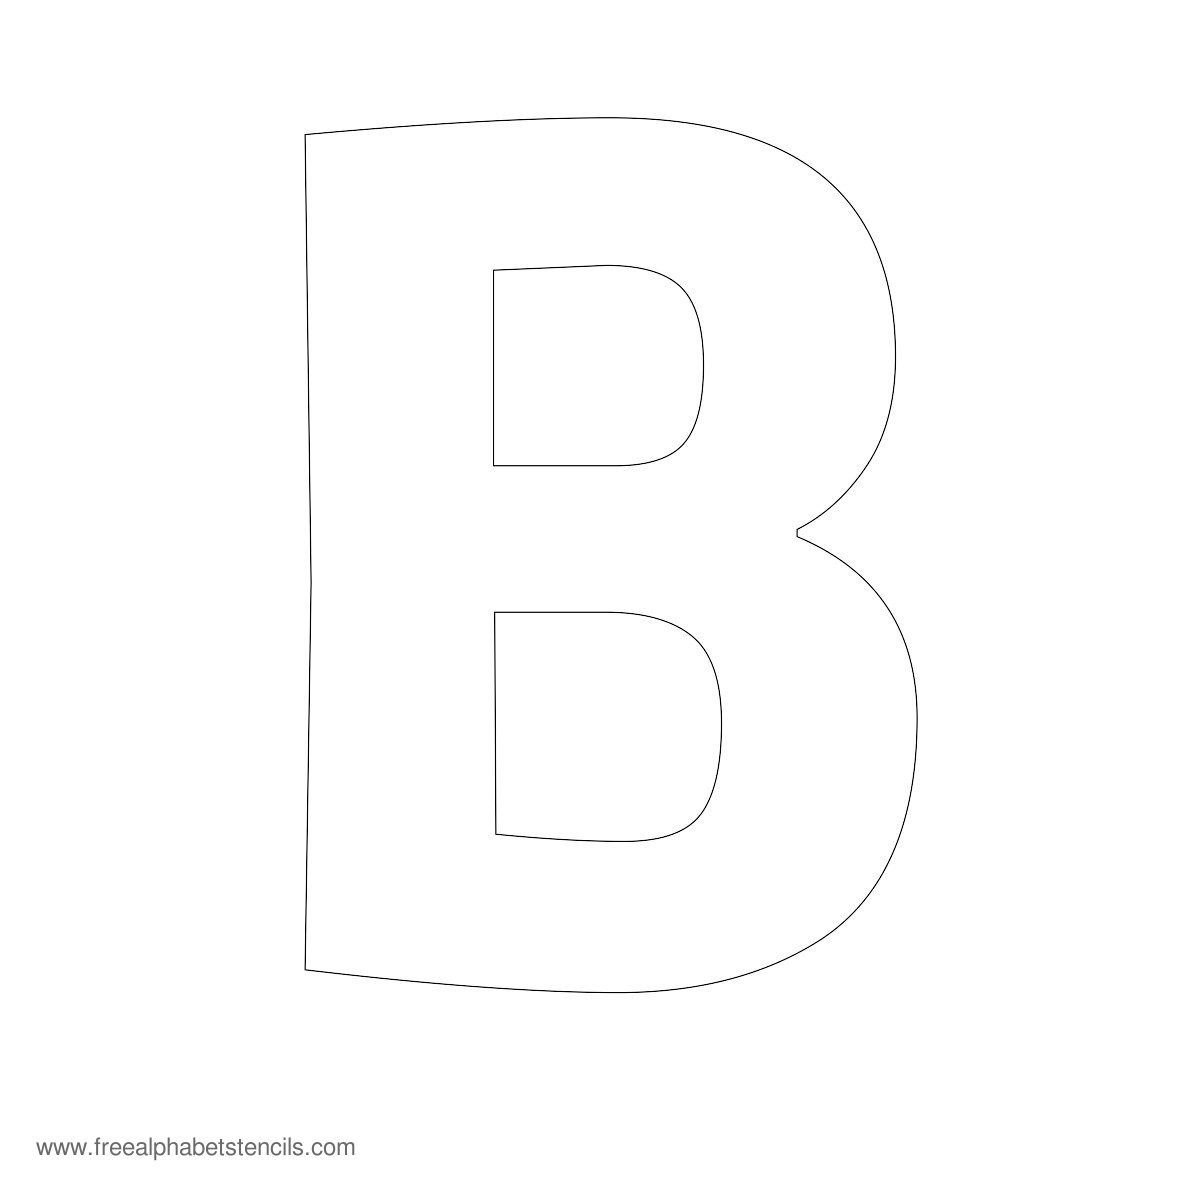 Large Alphabet Stencils | Freealphabetstencils - Free Printable Alphabet Stencils To Cut Out